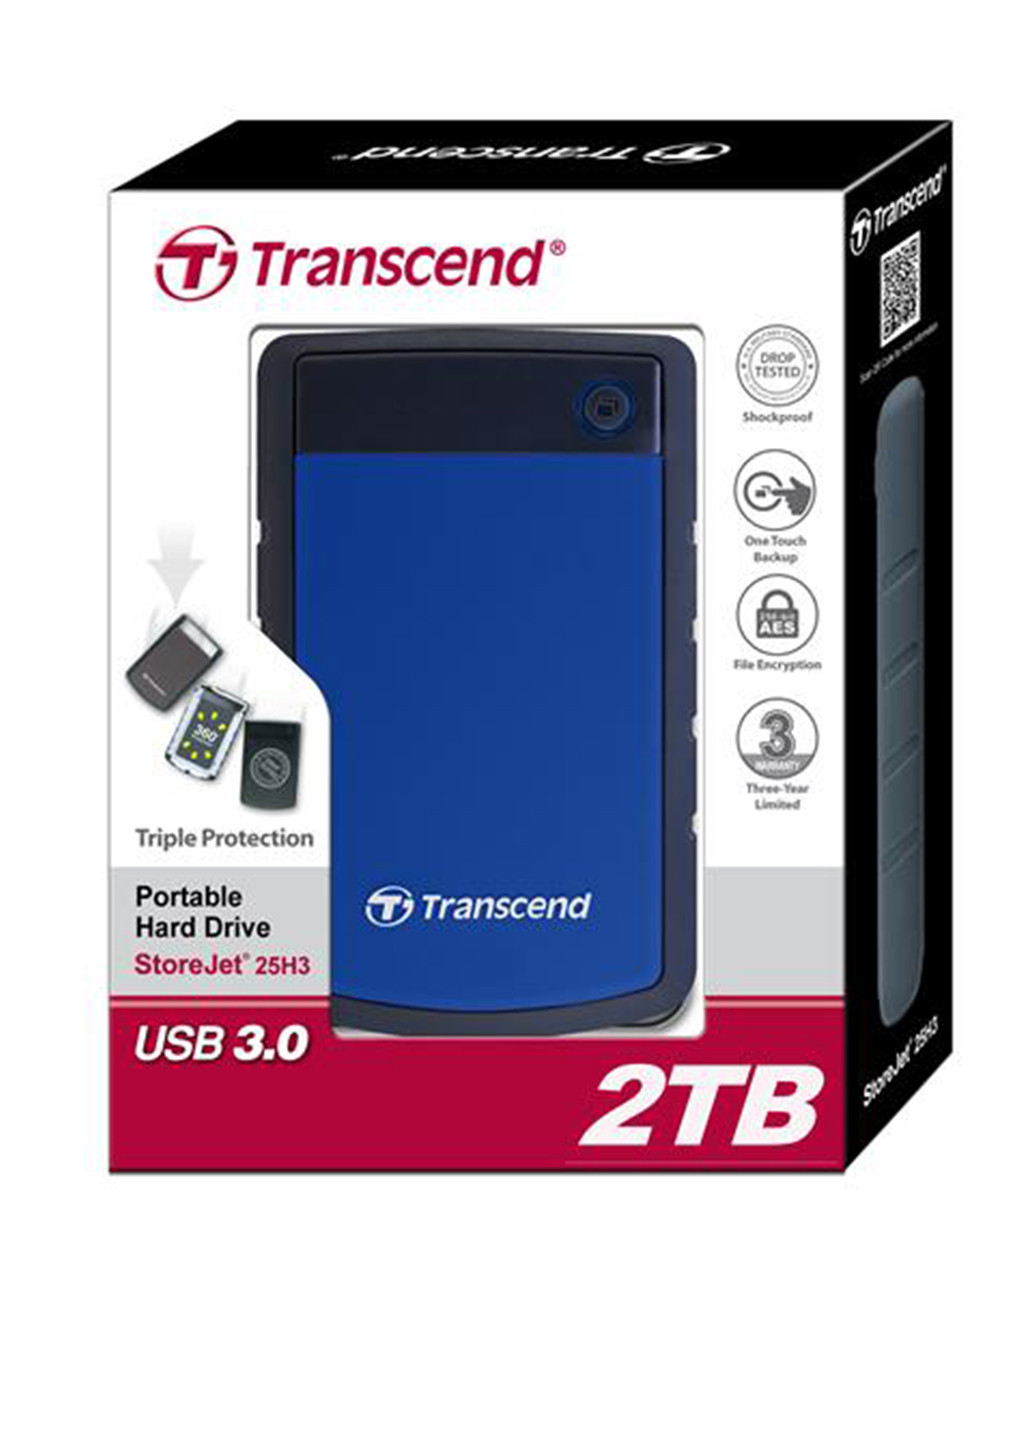 Зовнішній жорсткий диск StoreJet 25H3P 2TB TS2TSJ25H3B 2.5 USB 3.0 External Transcend Внешний жесткий диск Transcend StoreJet 25H3P 2TB TS2TSJ25H3B 2.5 USB 3.0 External синій